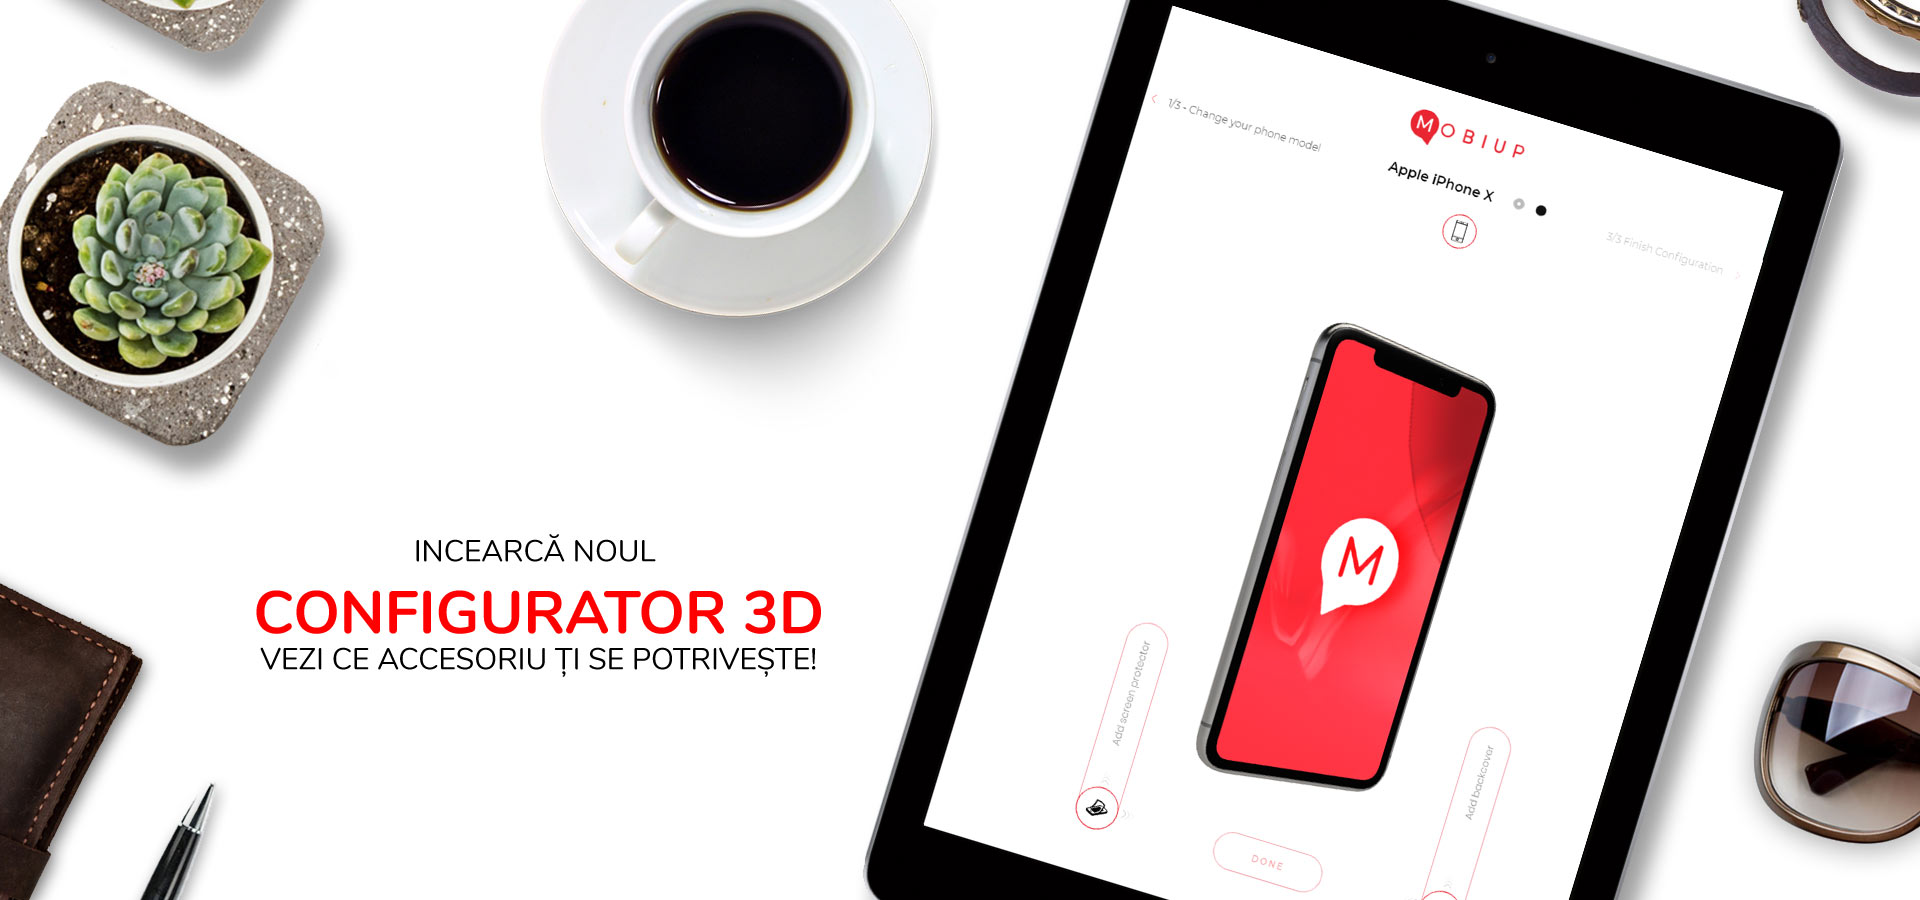 (P) Mobiup propune primul configurator 3D pentru accesorii de telefoane mobile